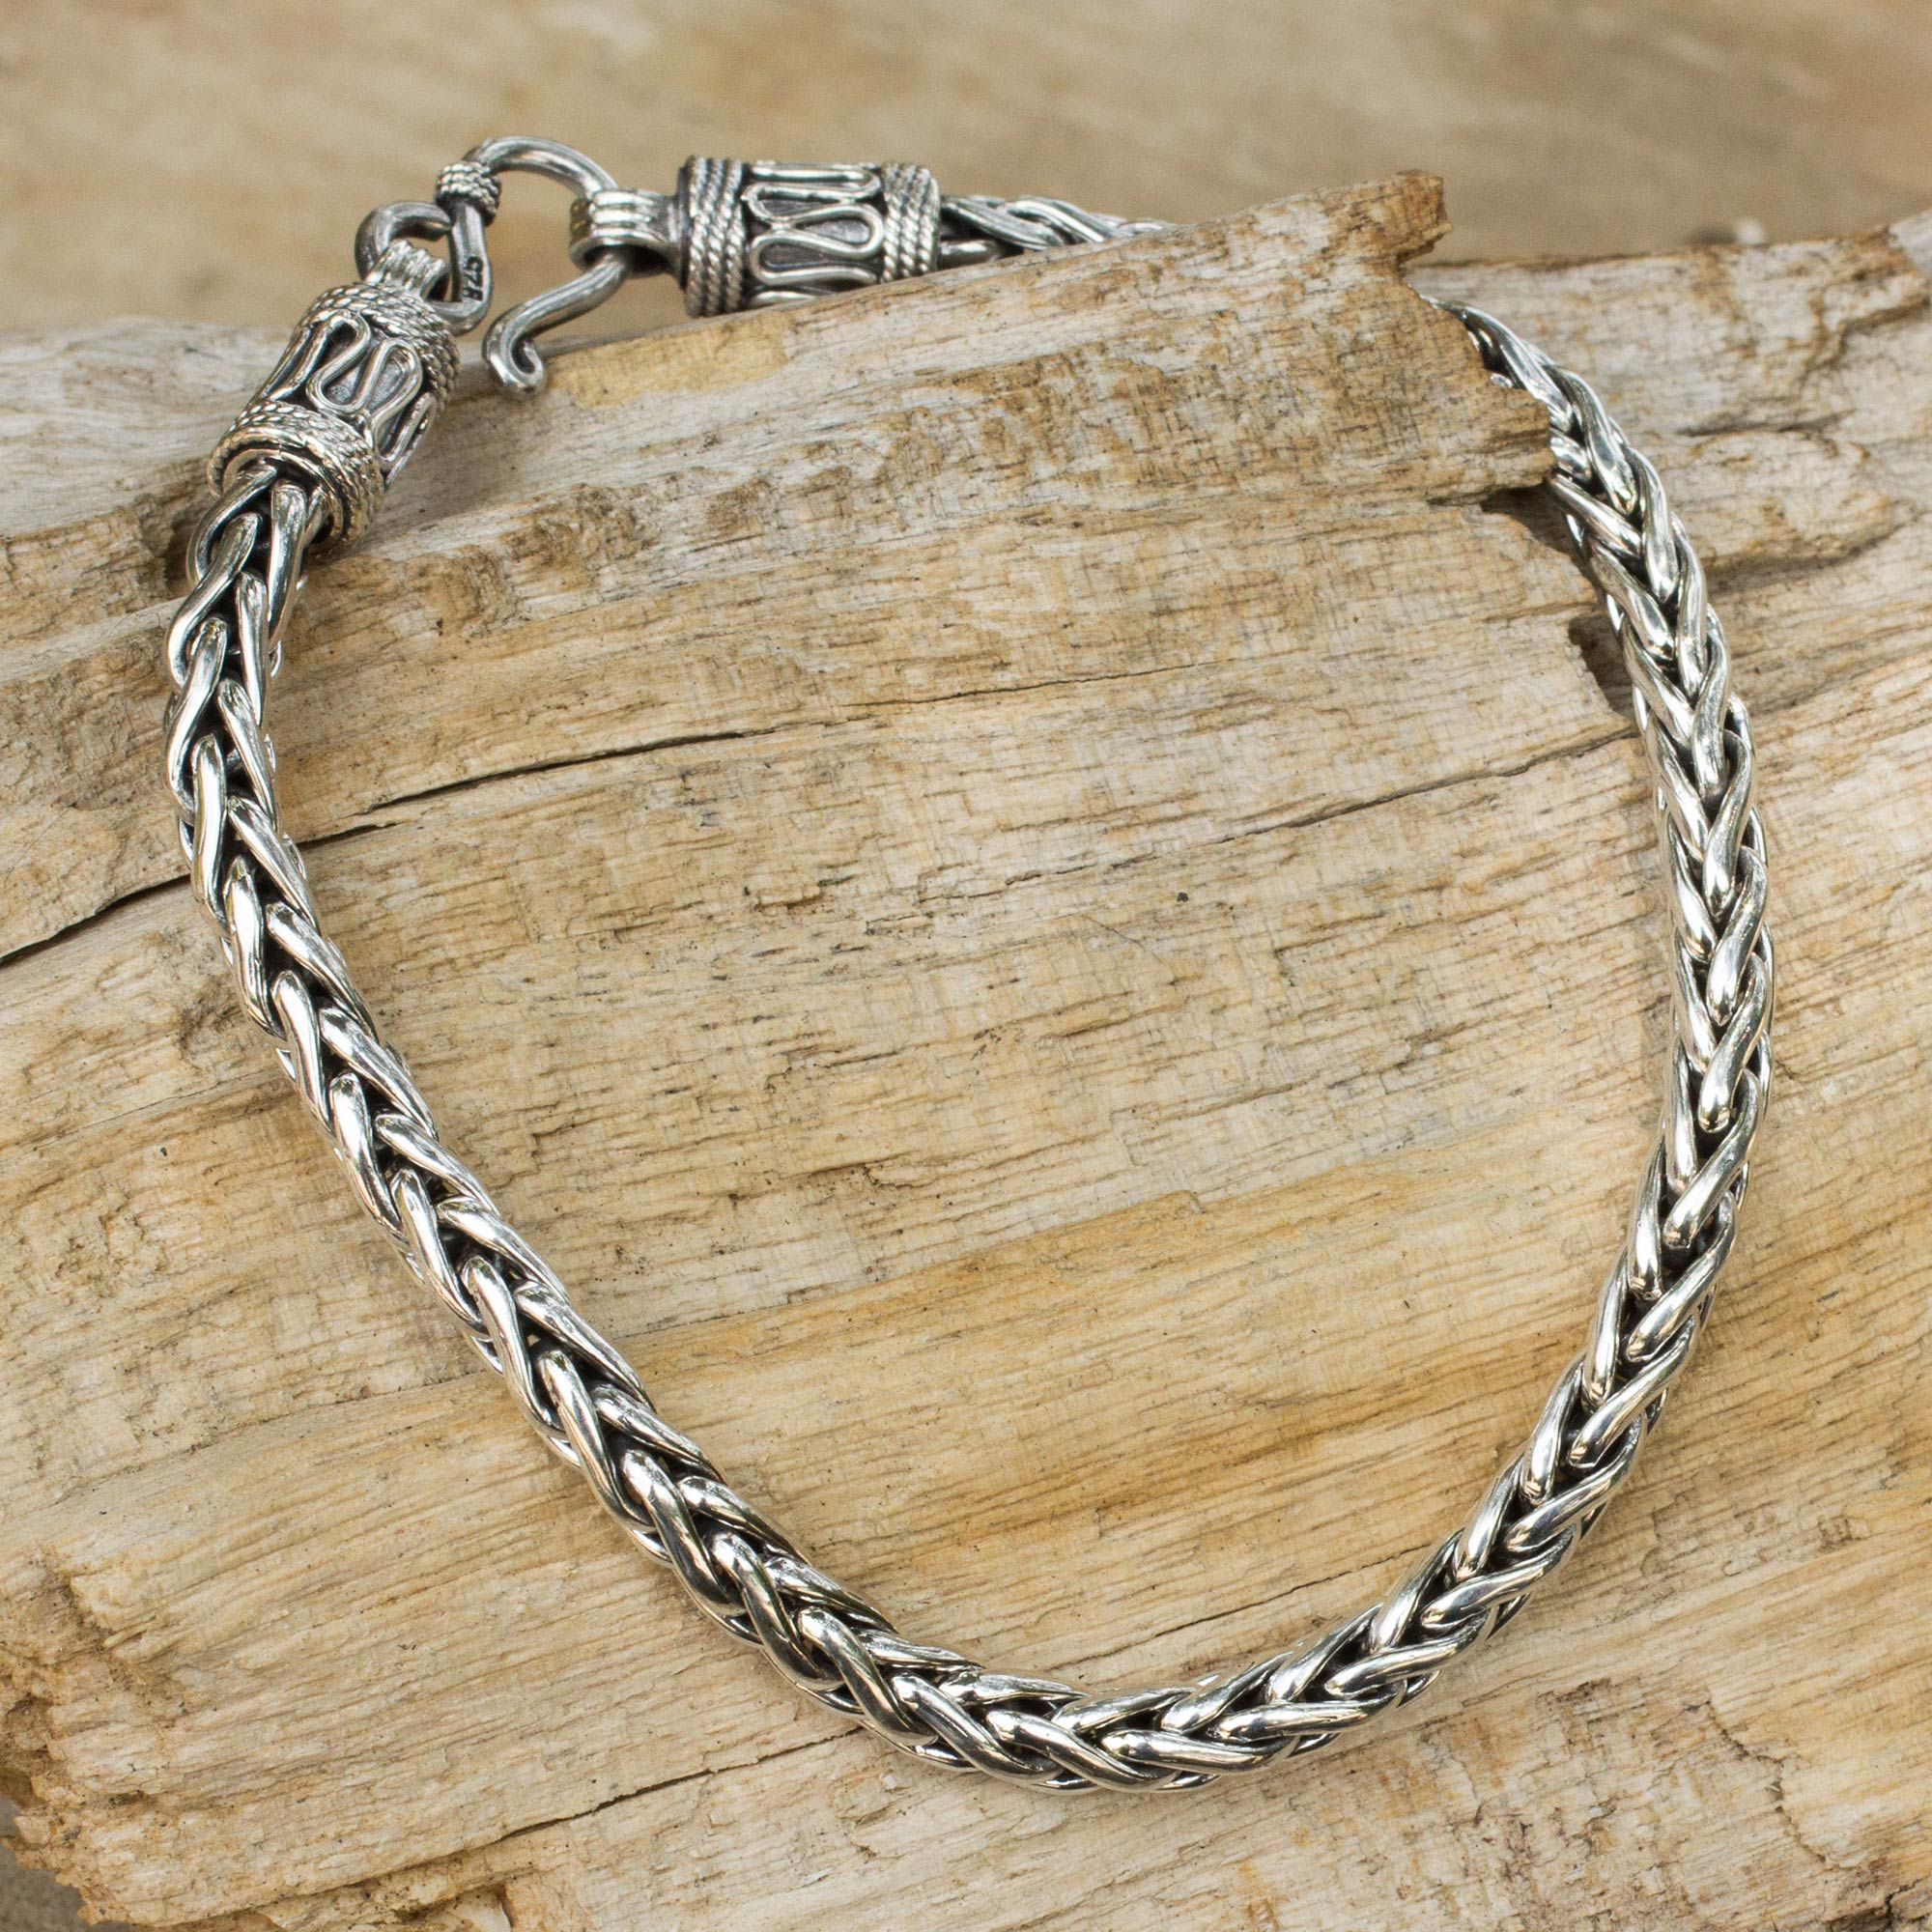 Men's Sterling Silver Chain Bracelet from Thailand - Strength | NOVICA